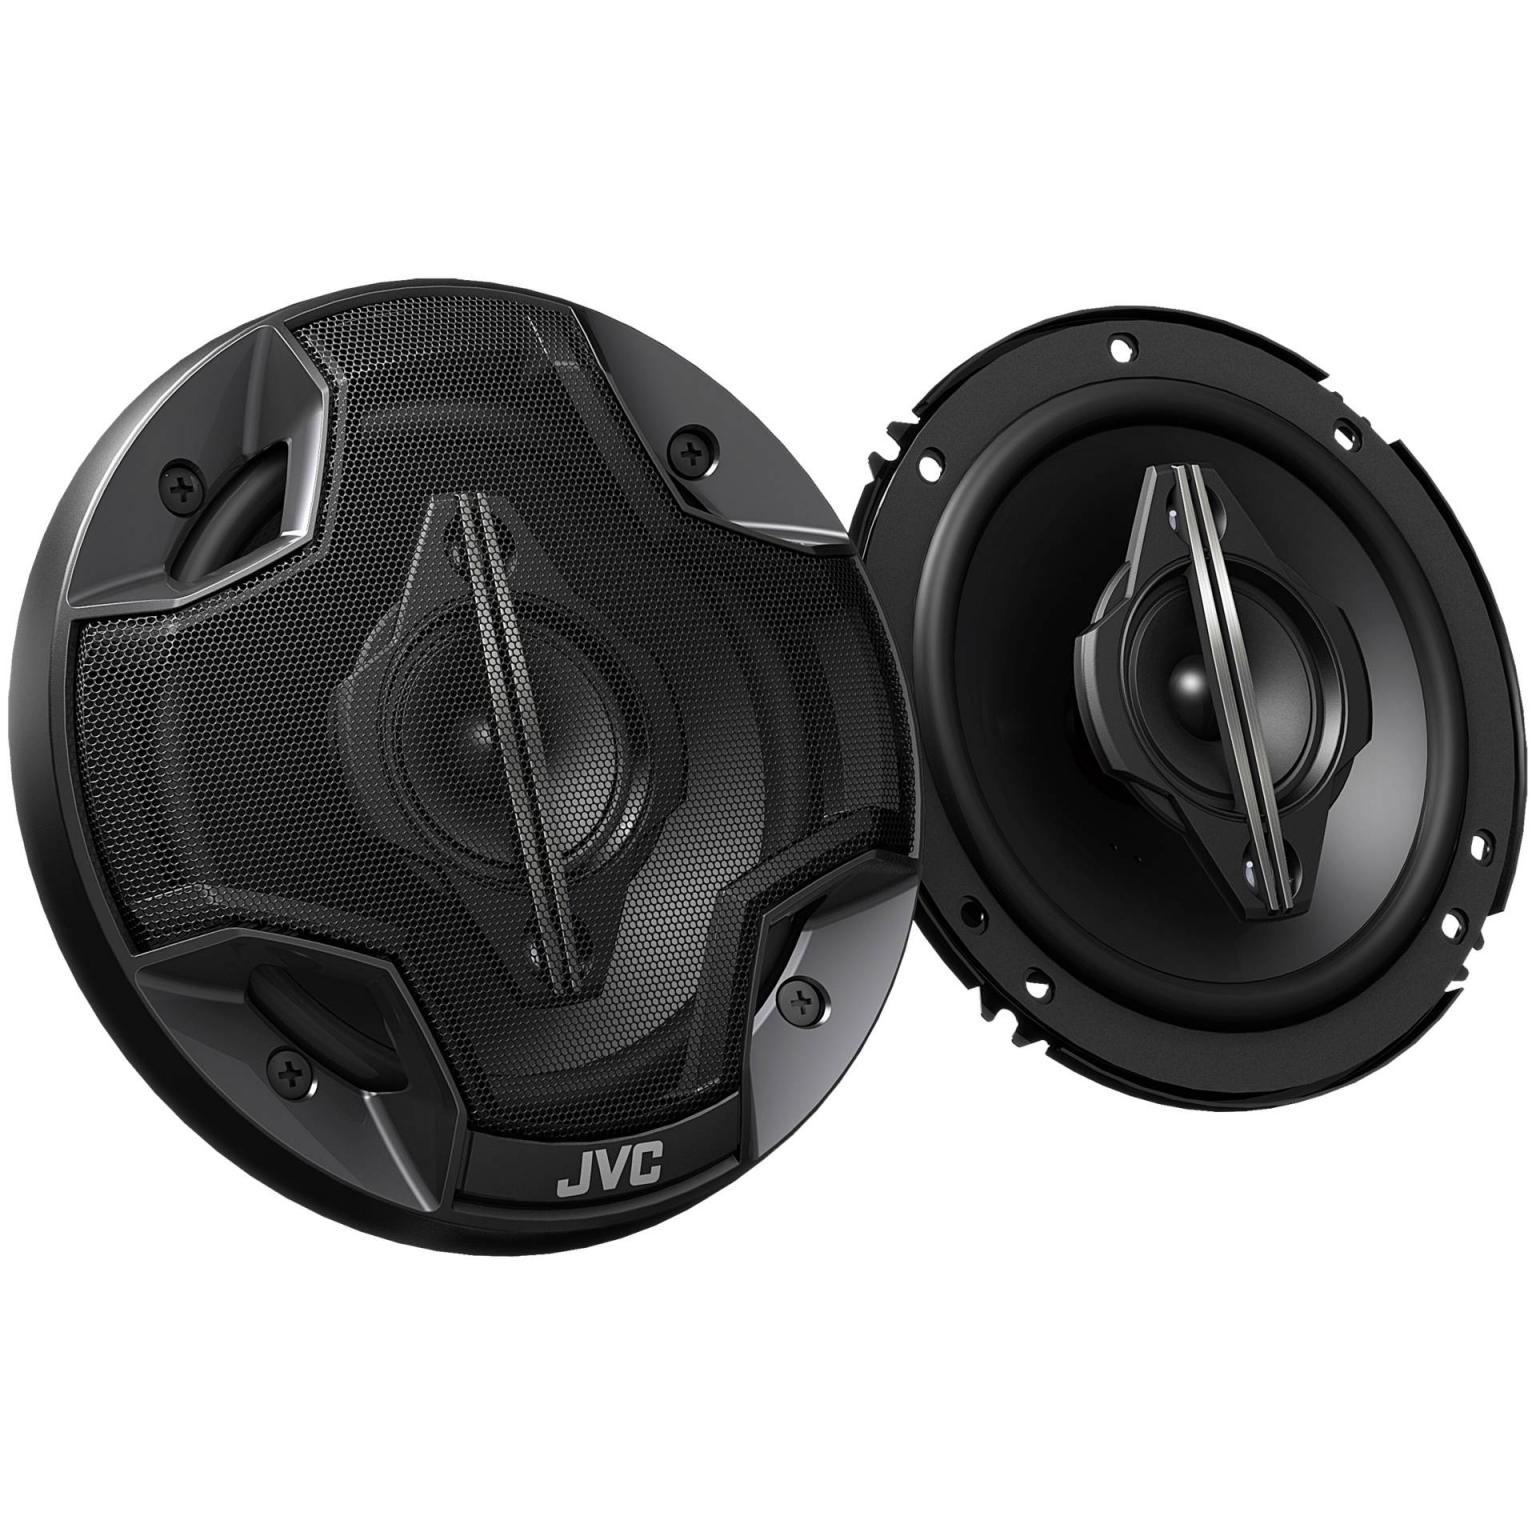 Fullrange speakers - 6 Inch - JVC